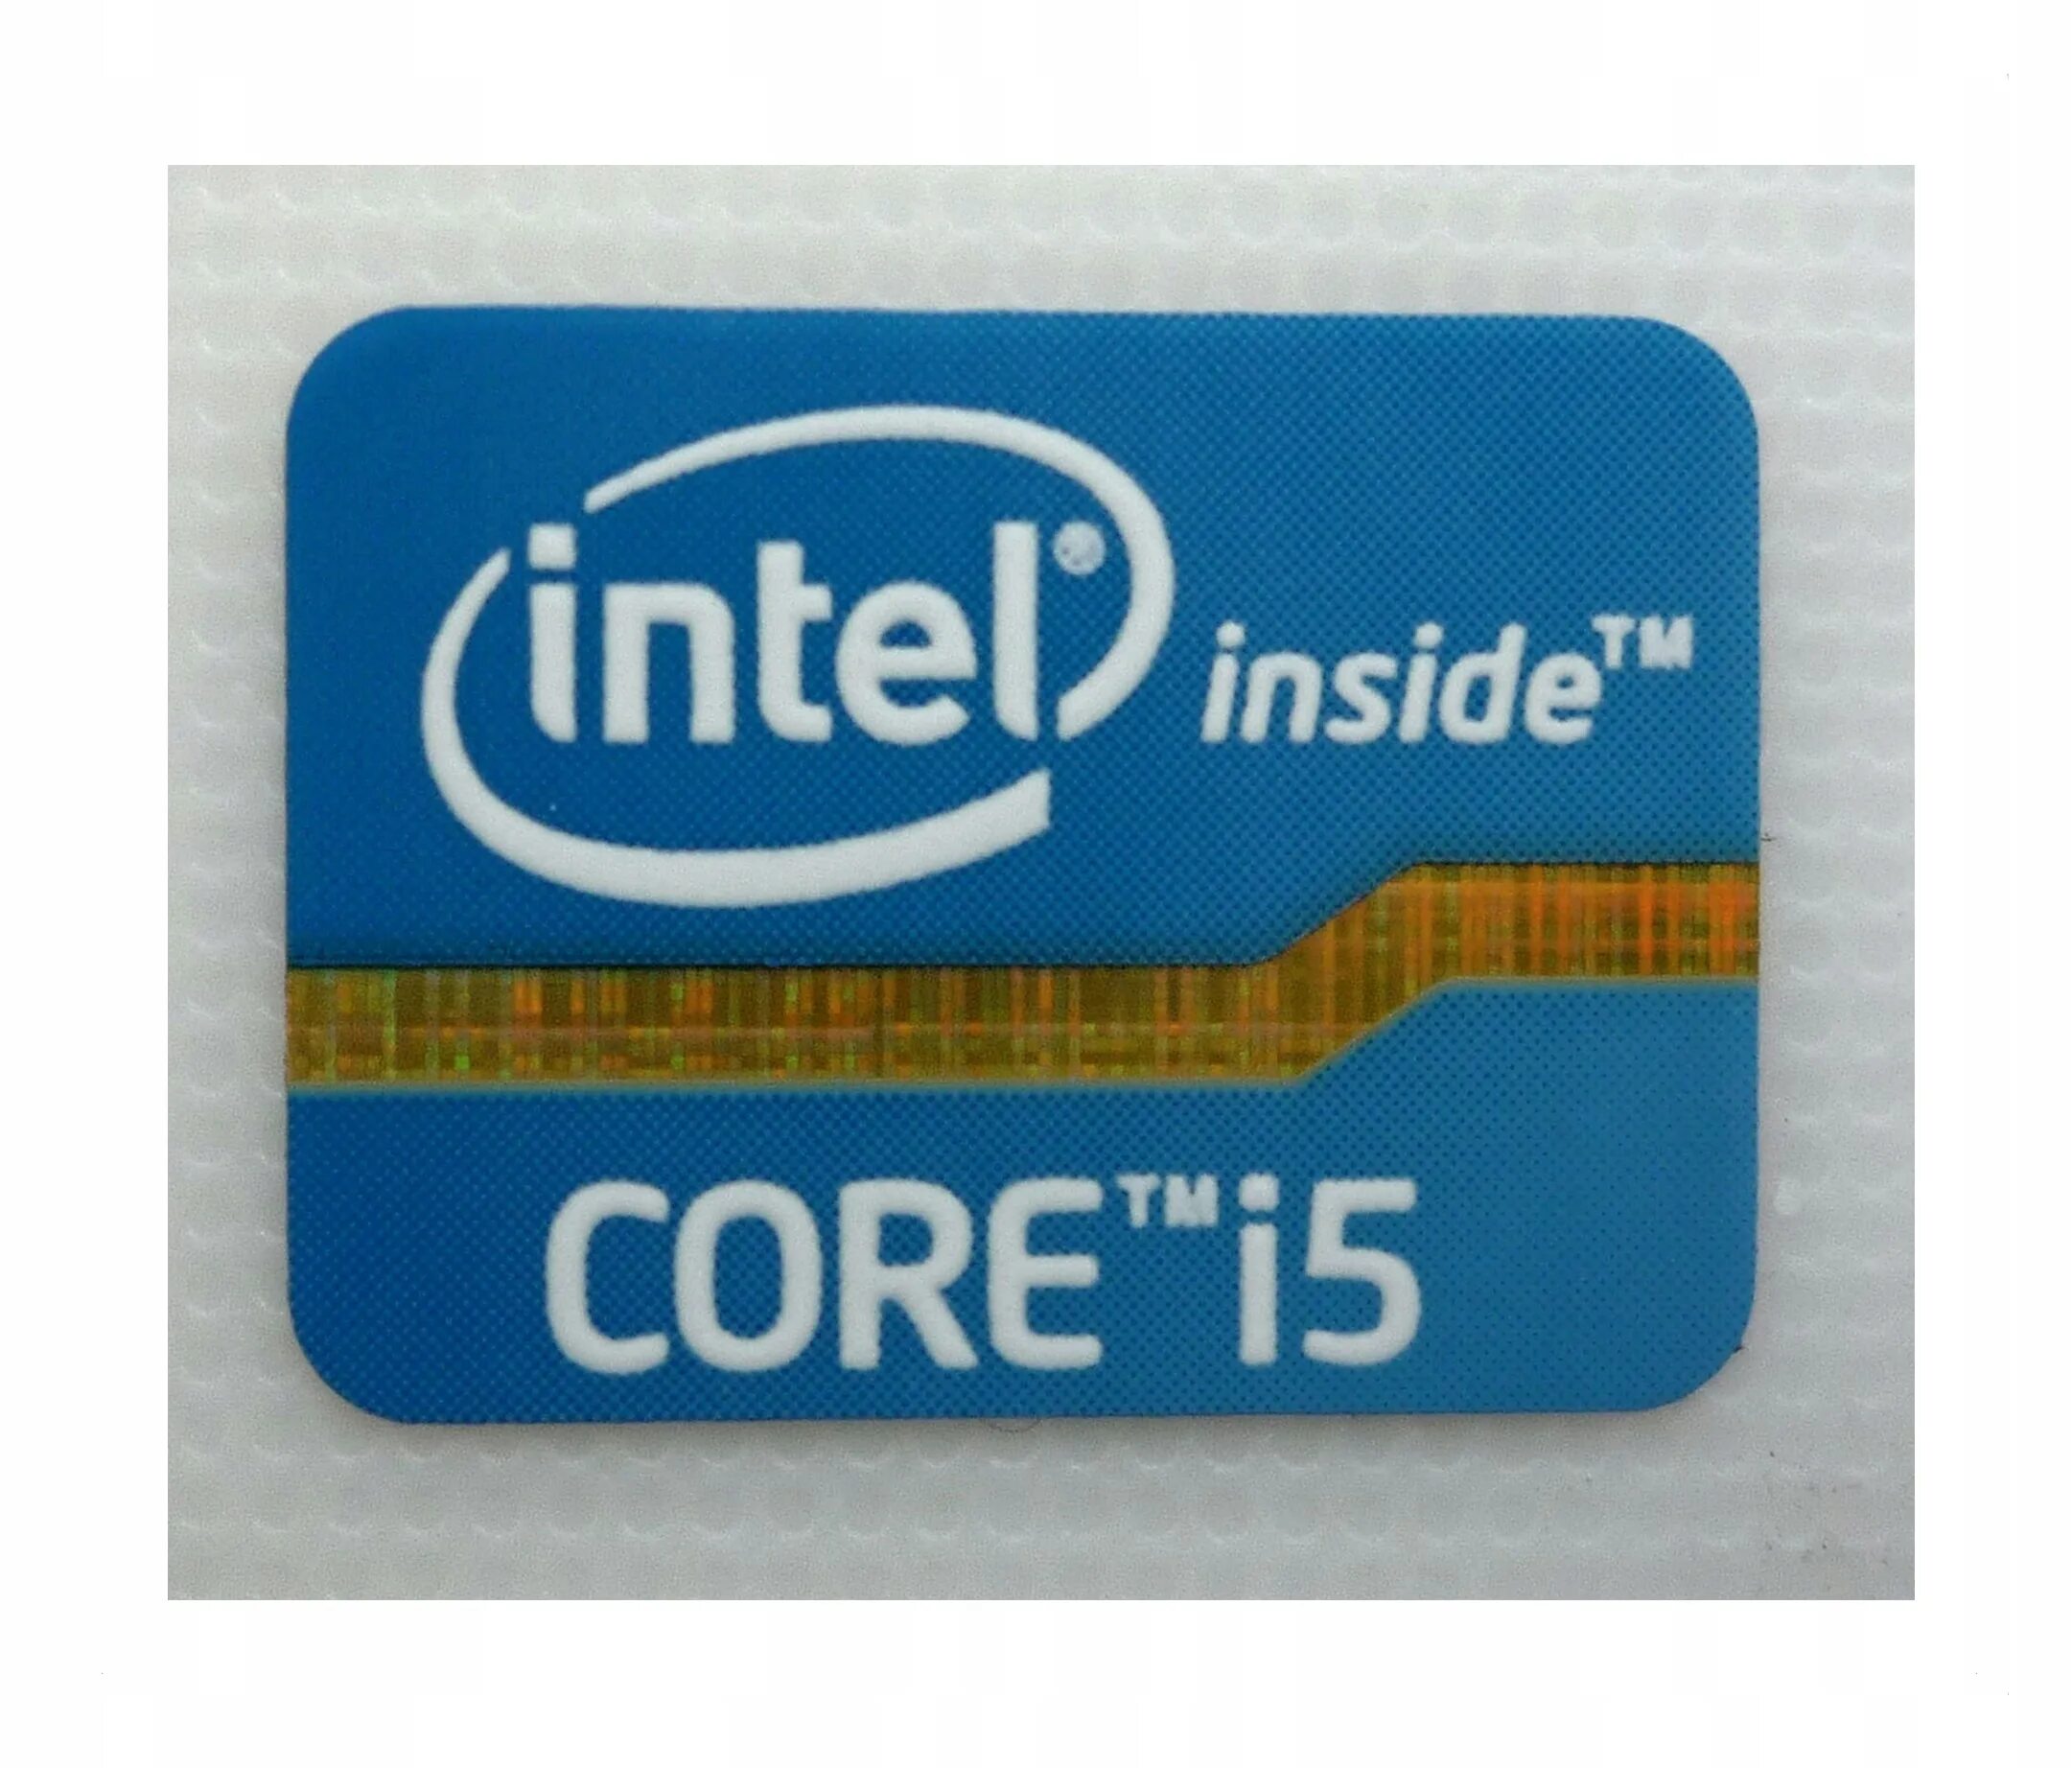 Intel Core i5 стикер. Наклейка Intel Core i7 inside. Intel Core i5 inside наклейка. Intel Core i5 inside. Коре тм